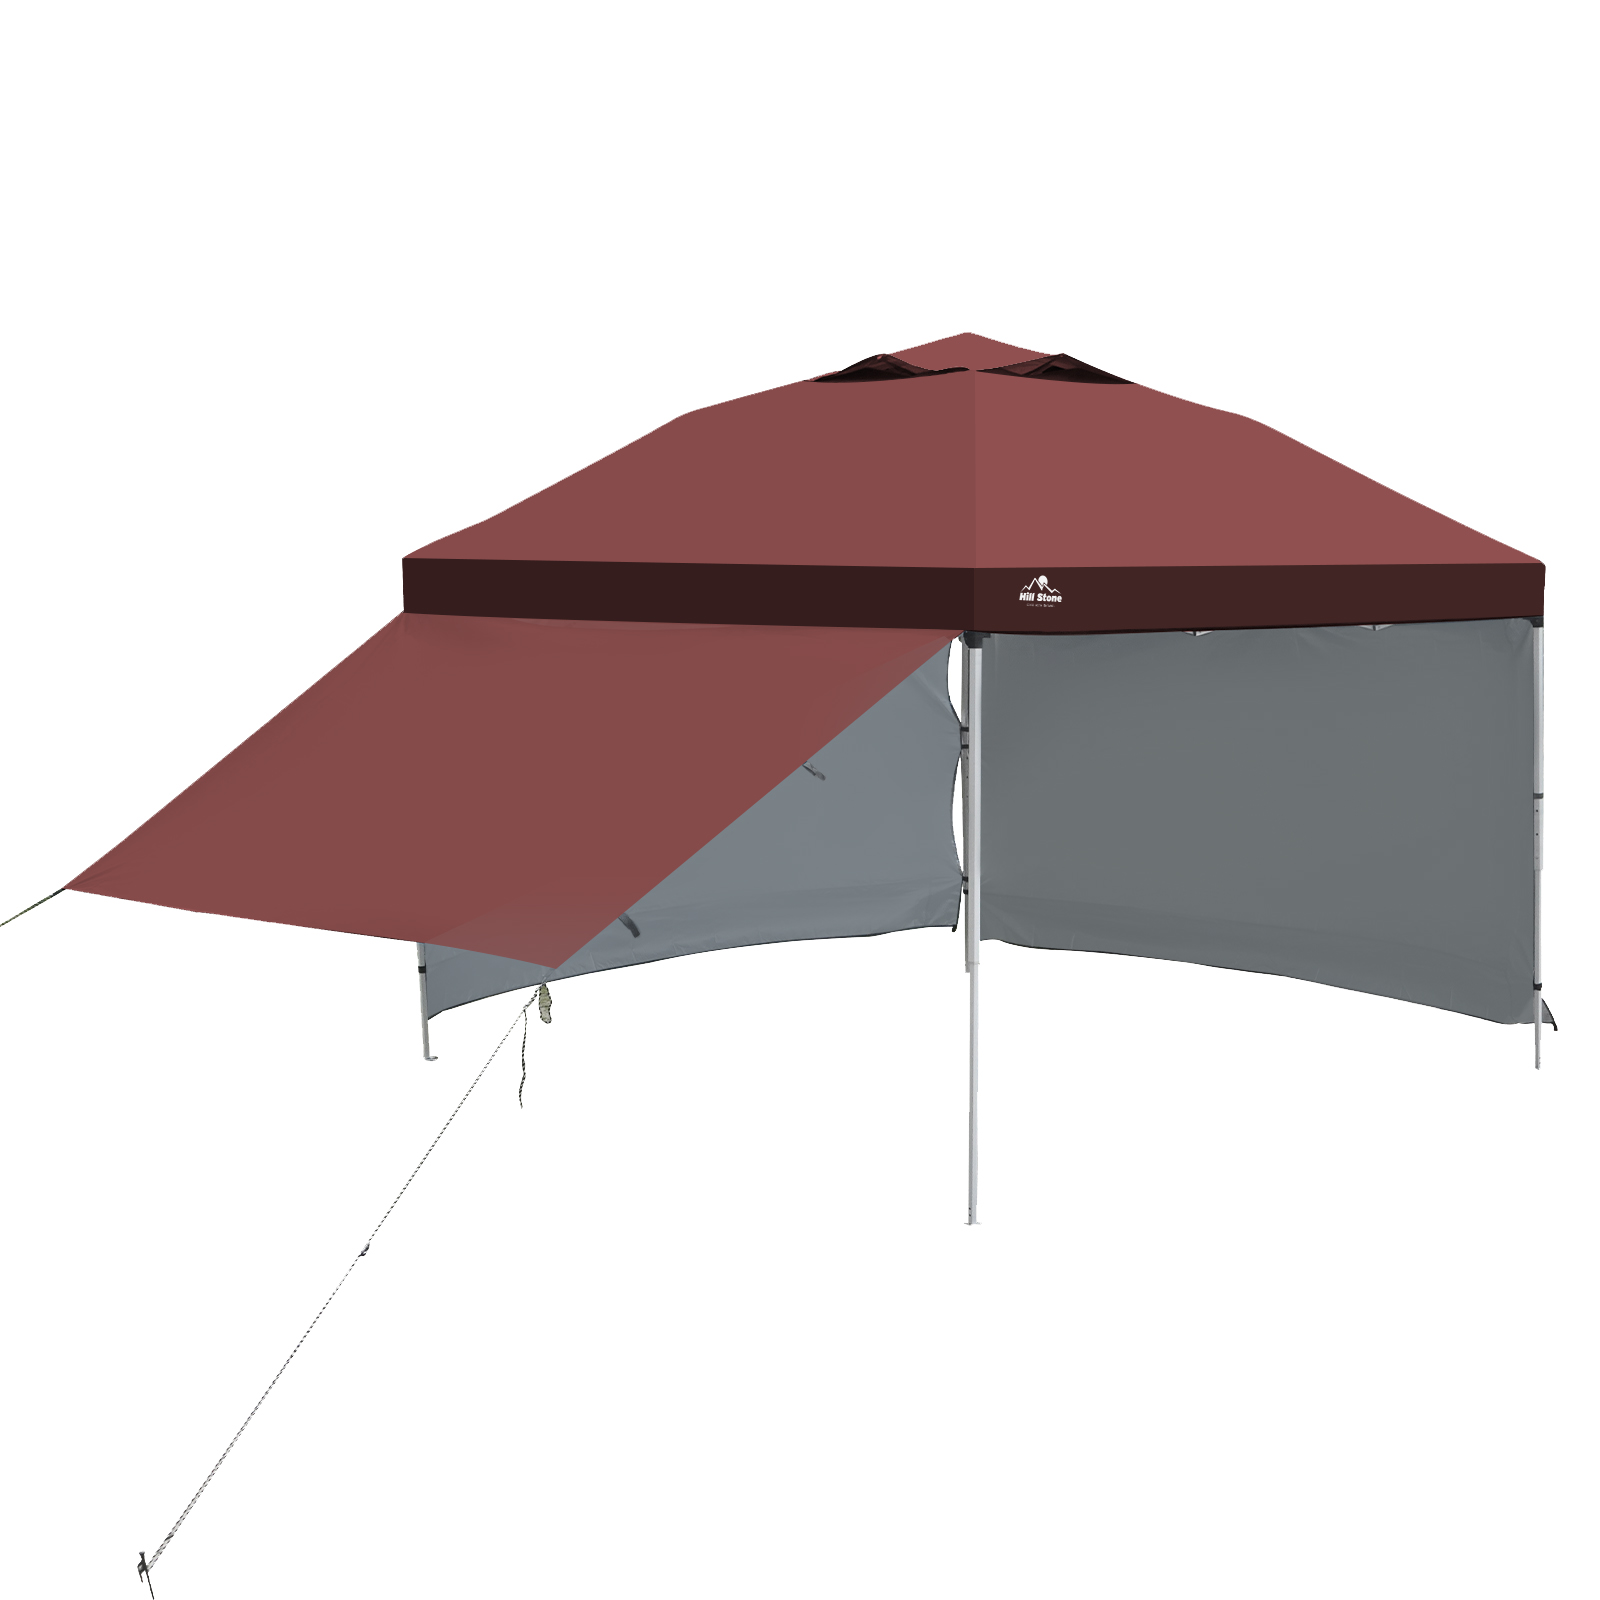 テント タープ 3×3m UV サイドシートセット 横幕付き セット 